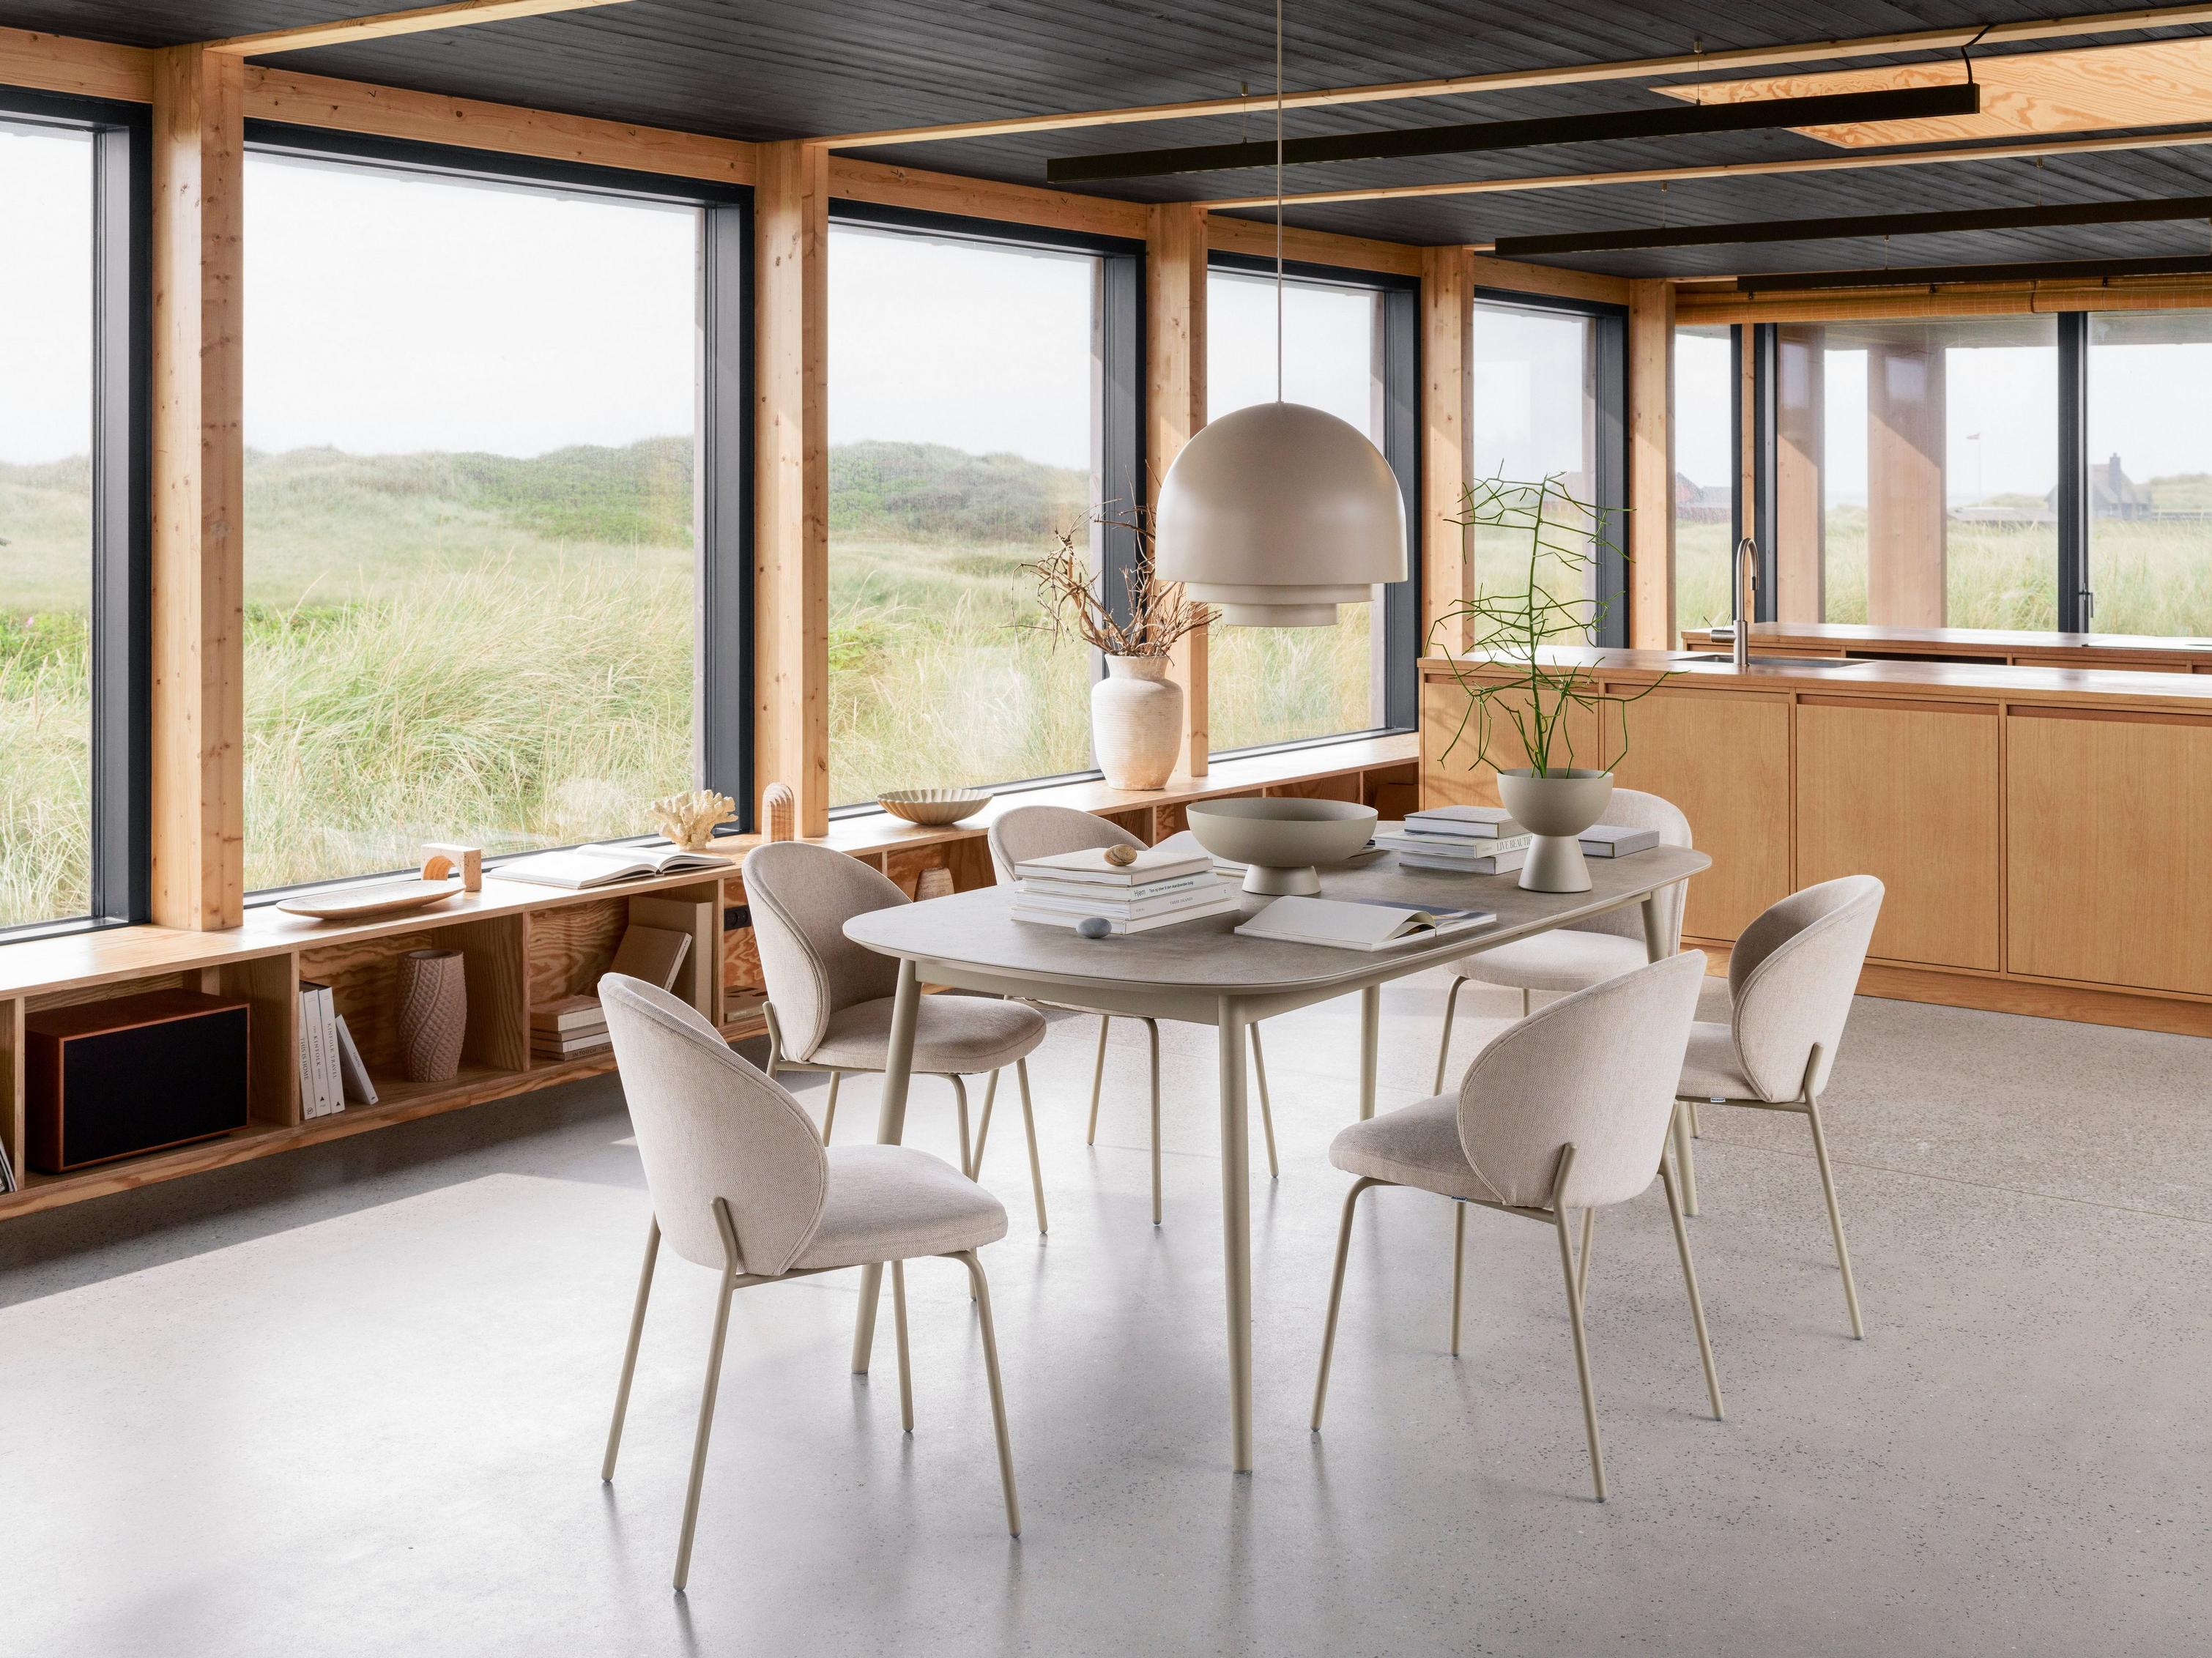 採用 Kingston 餐桌和 Princeton 餐椅的現代明亮用餐空間。